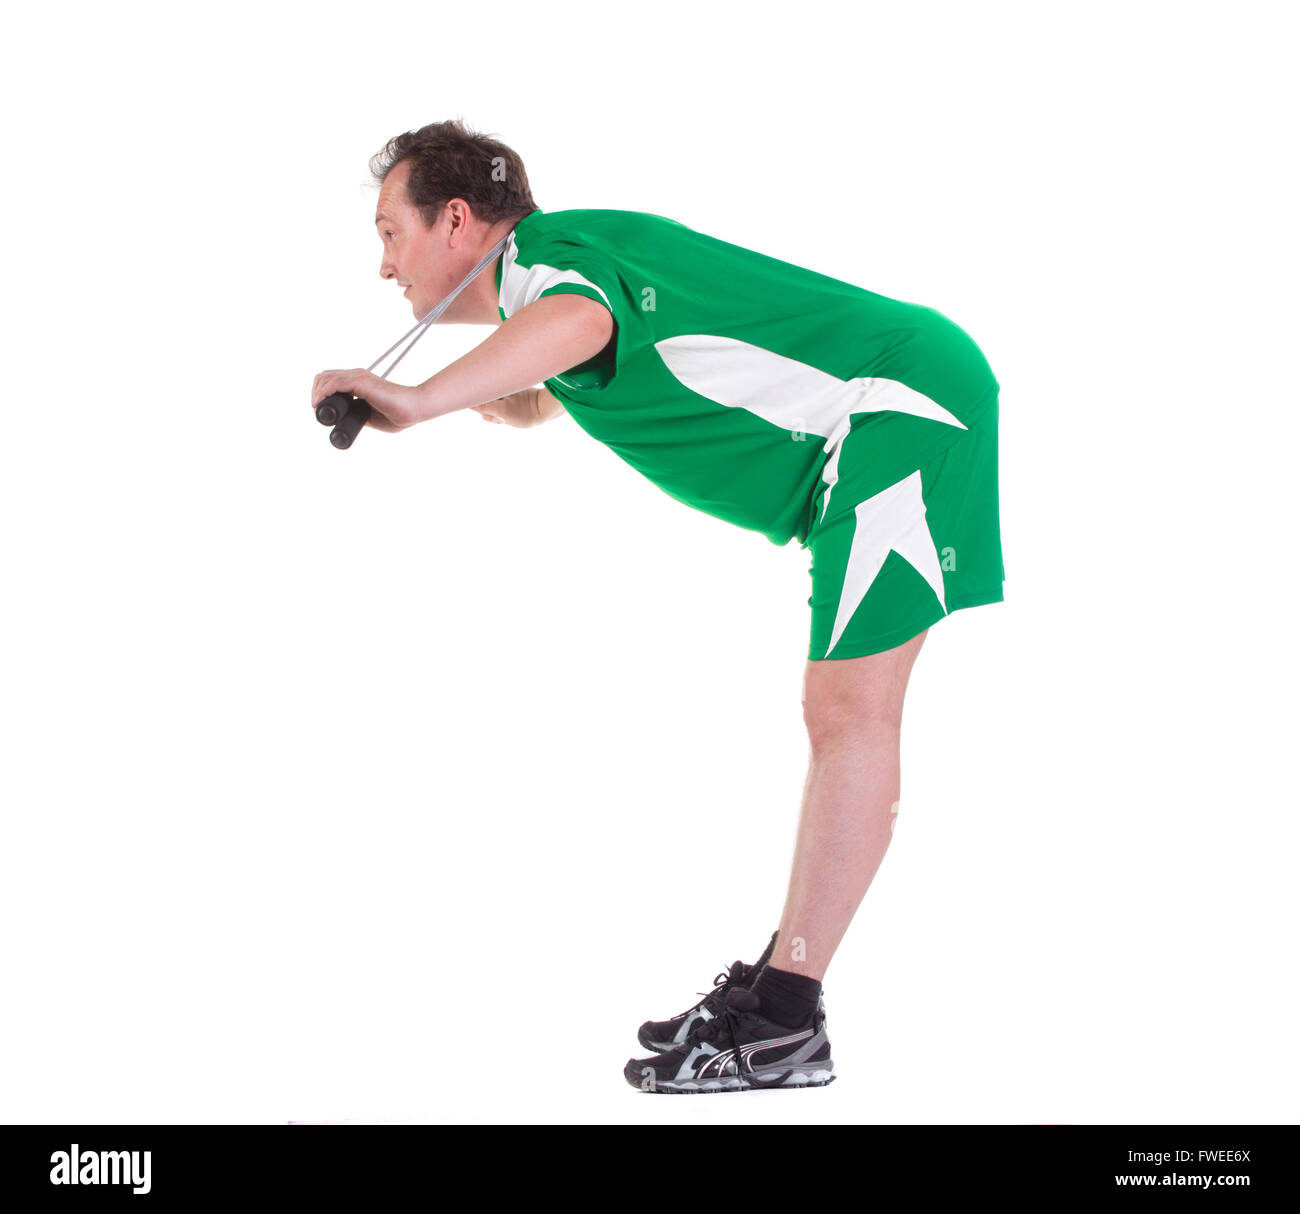 L'homme dans le sport adultes uniforme vert avec la corde à sauter, isolated on white Banque D'Images